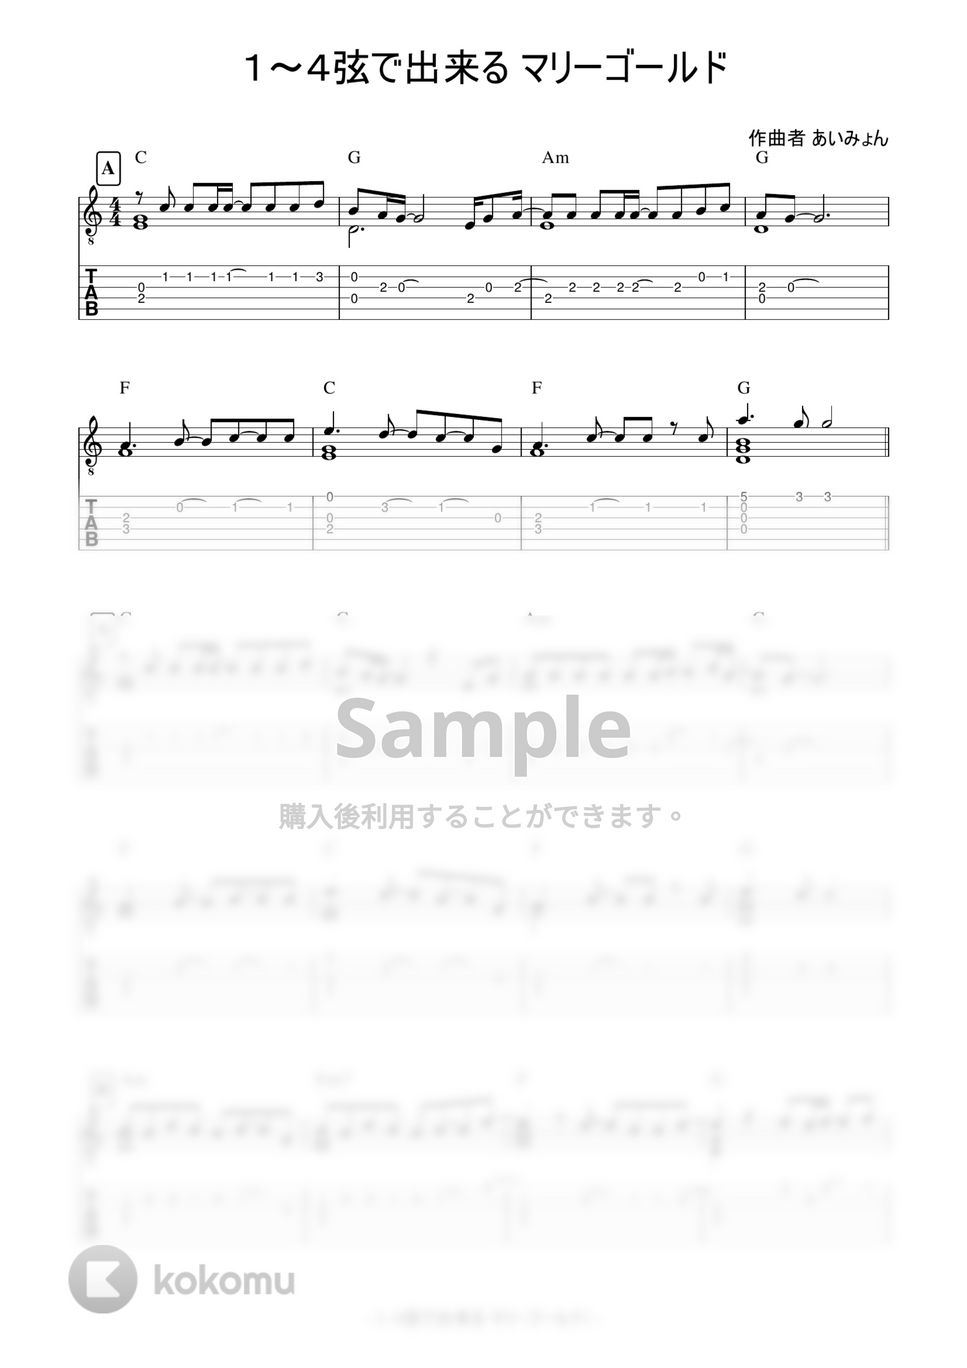 あいみょん - マリーゴールド (4本弦で弾ける簡単ソロギター) by 早乙女浩司